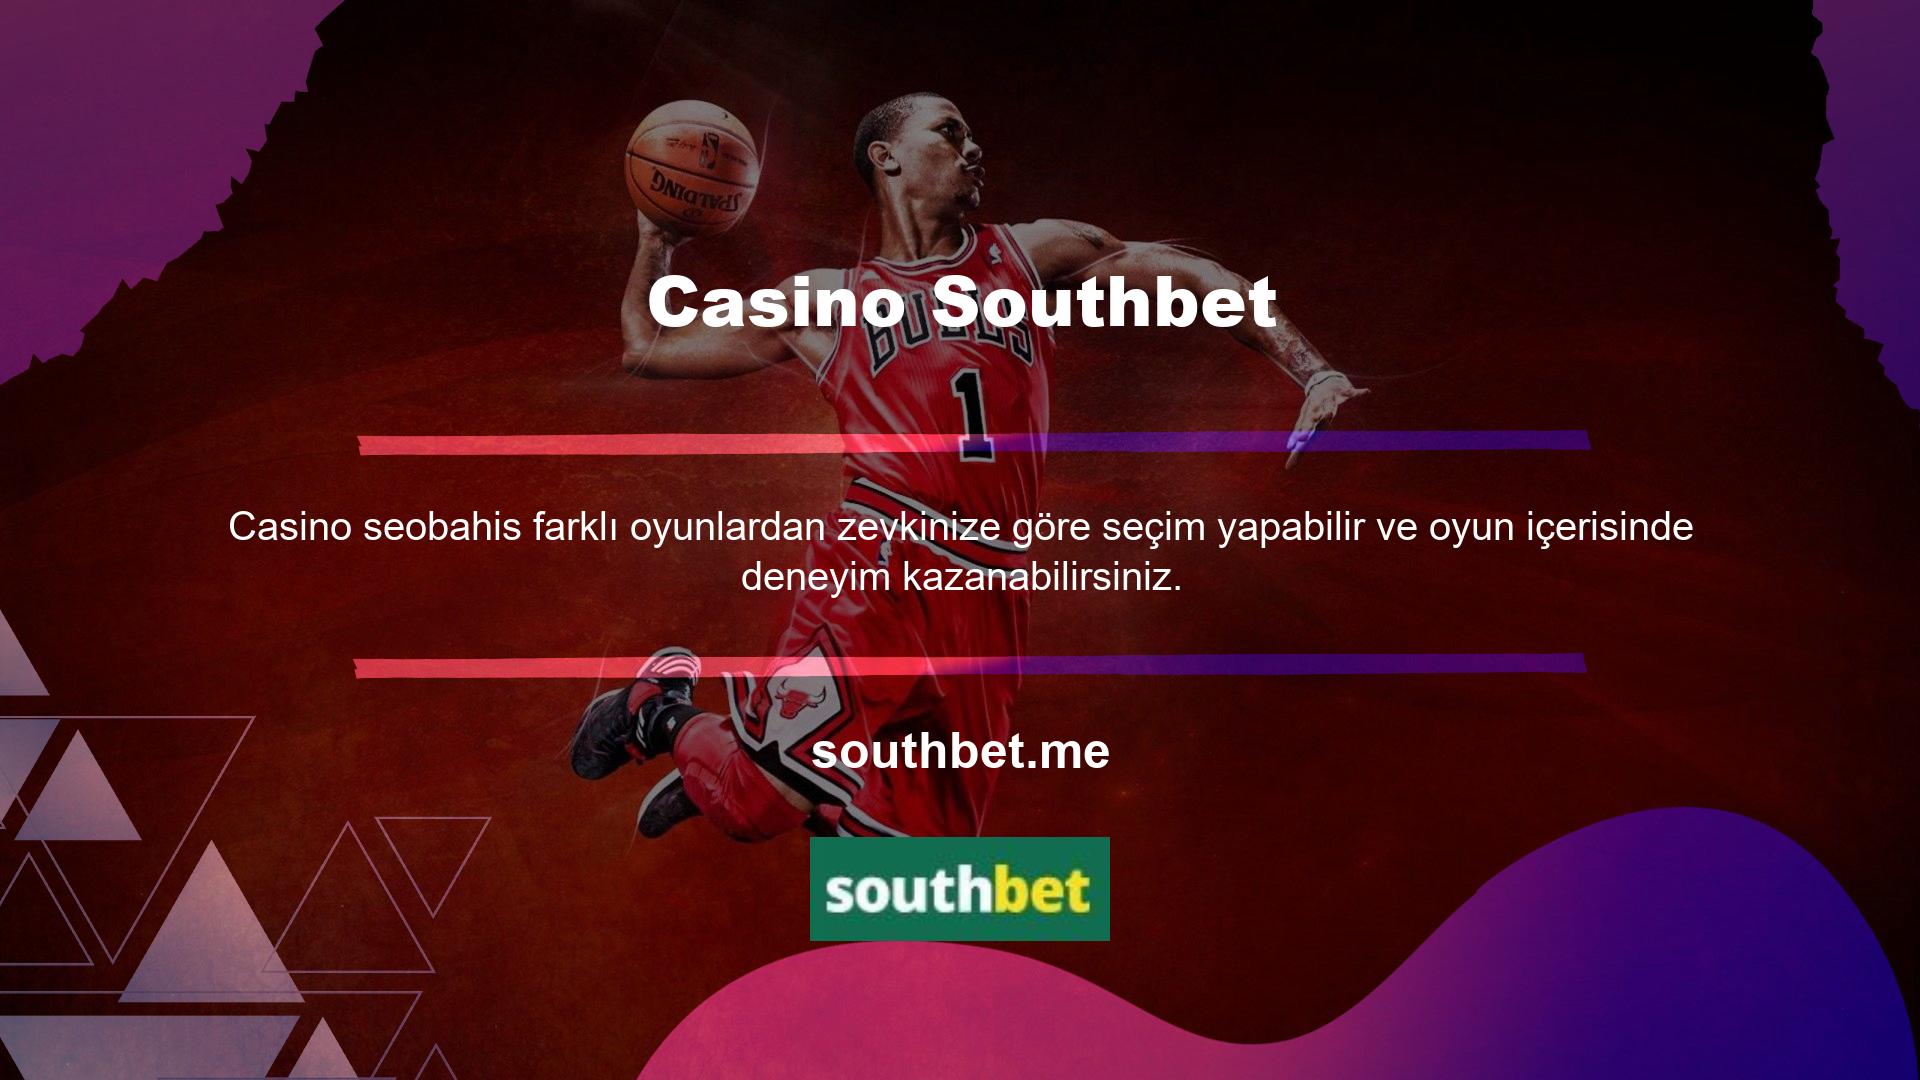 Kaliteli casino oyunları sunan online bahis siteleri arasında oldukça popüler olan bir bahis sitesi